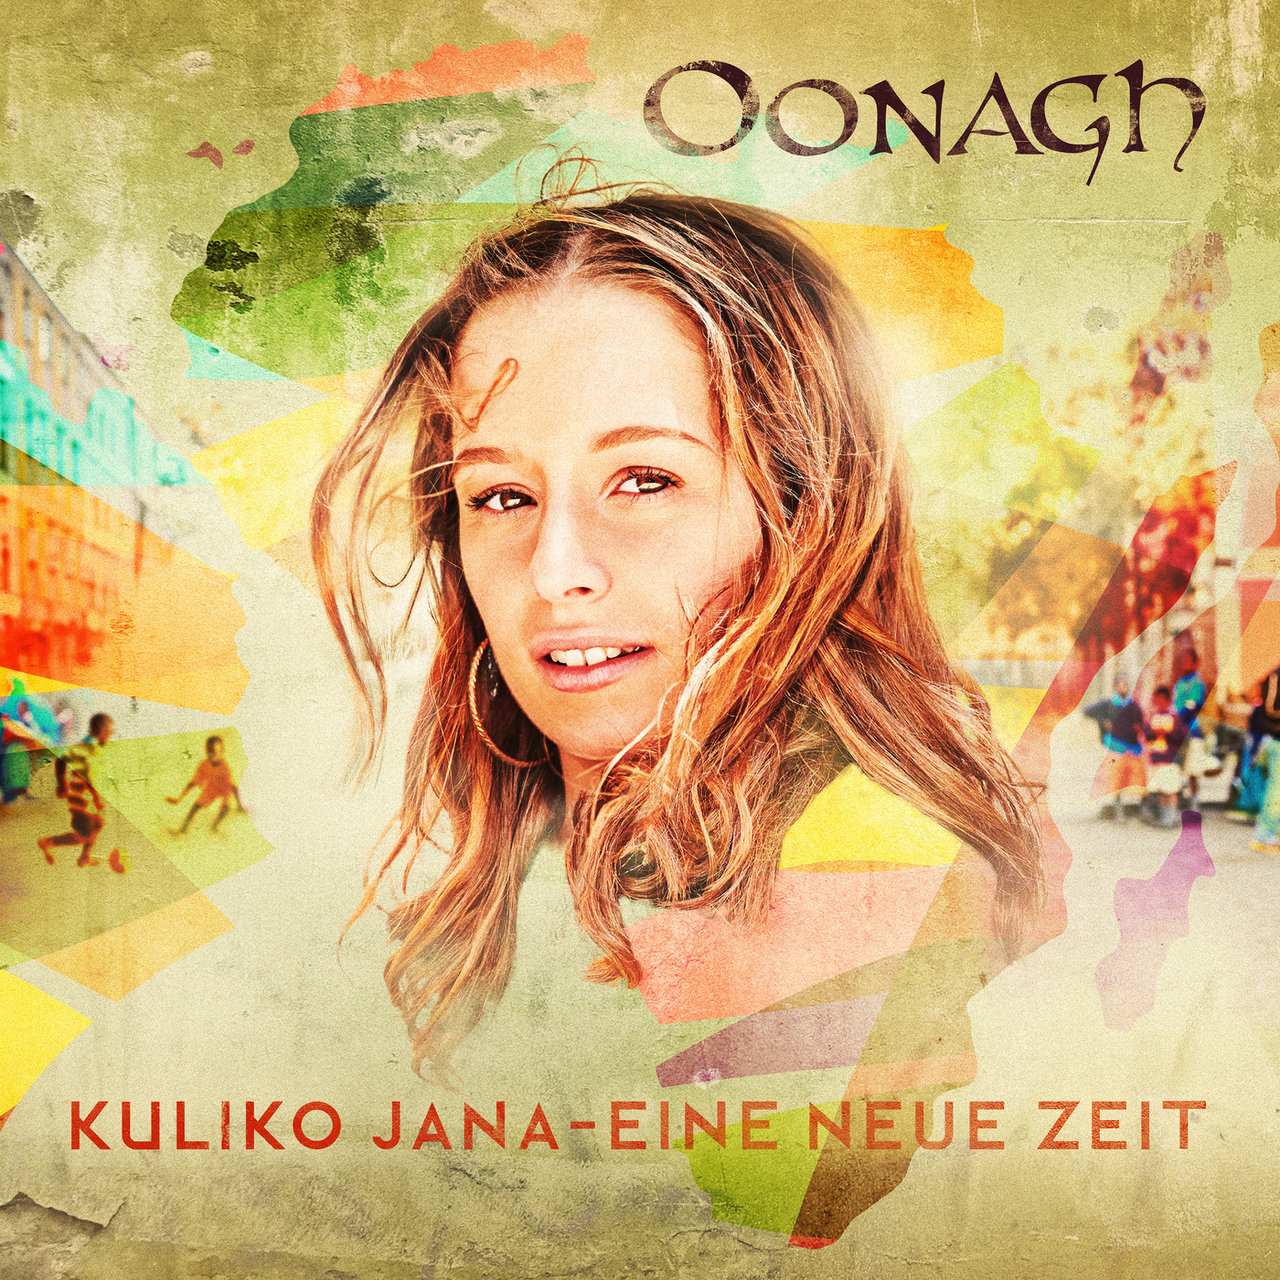 Oonagh Kuliko Jana - Eine neue Zeit cover artwork